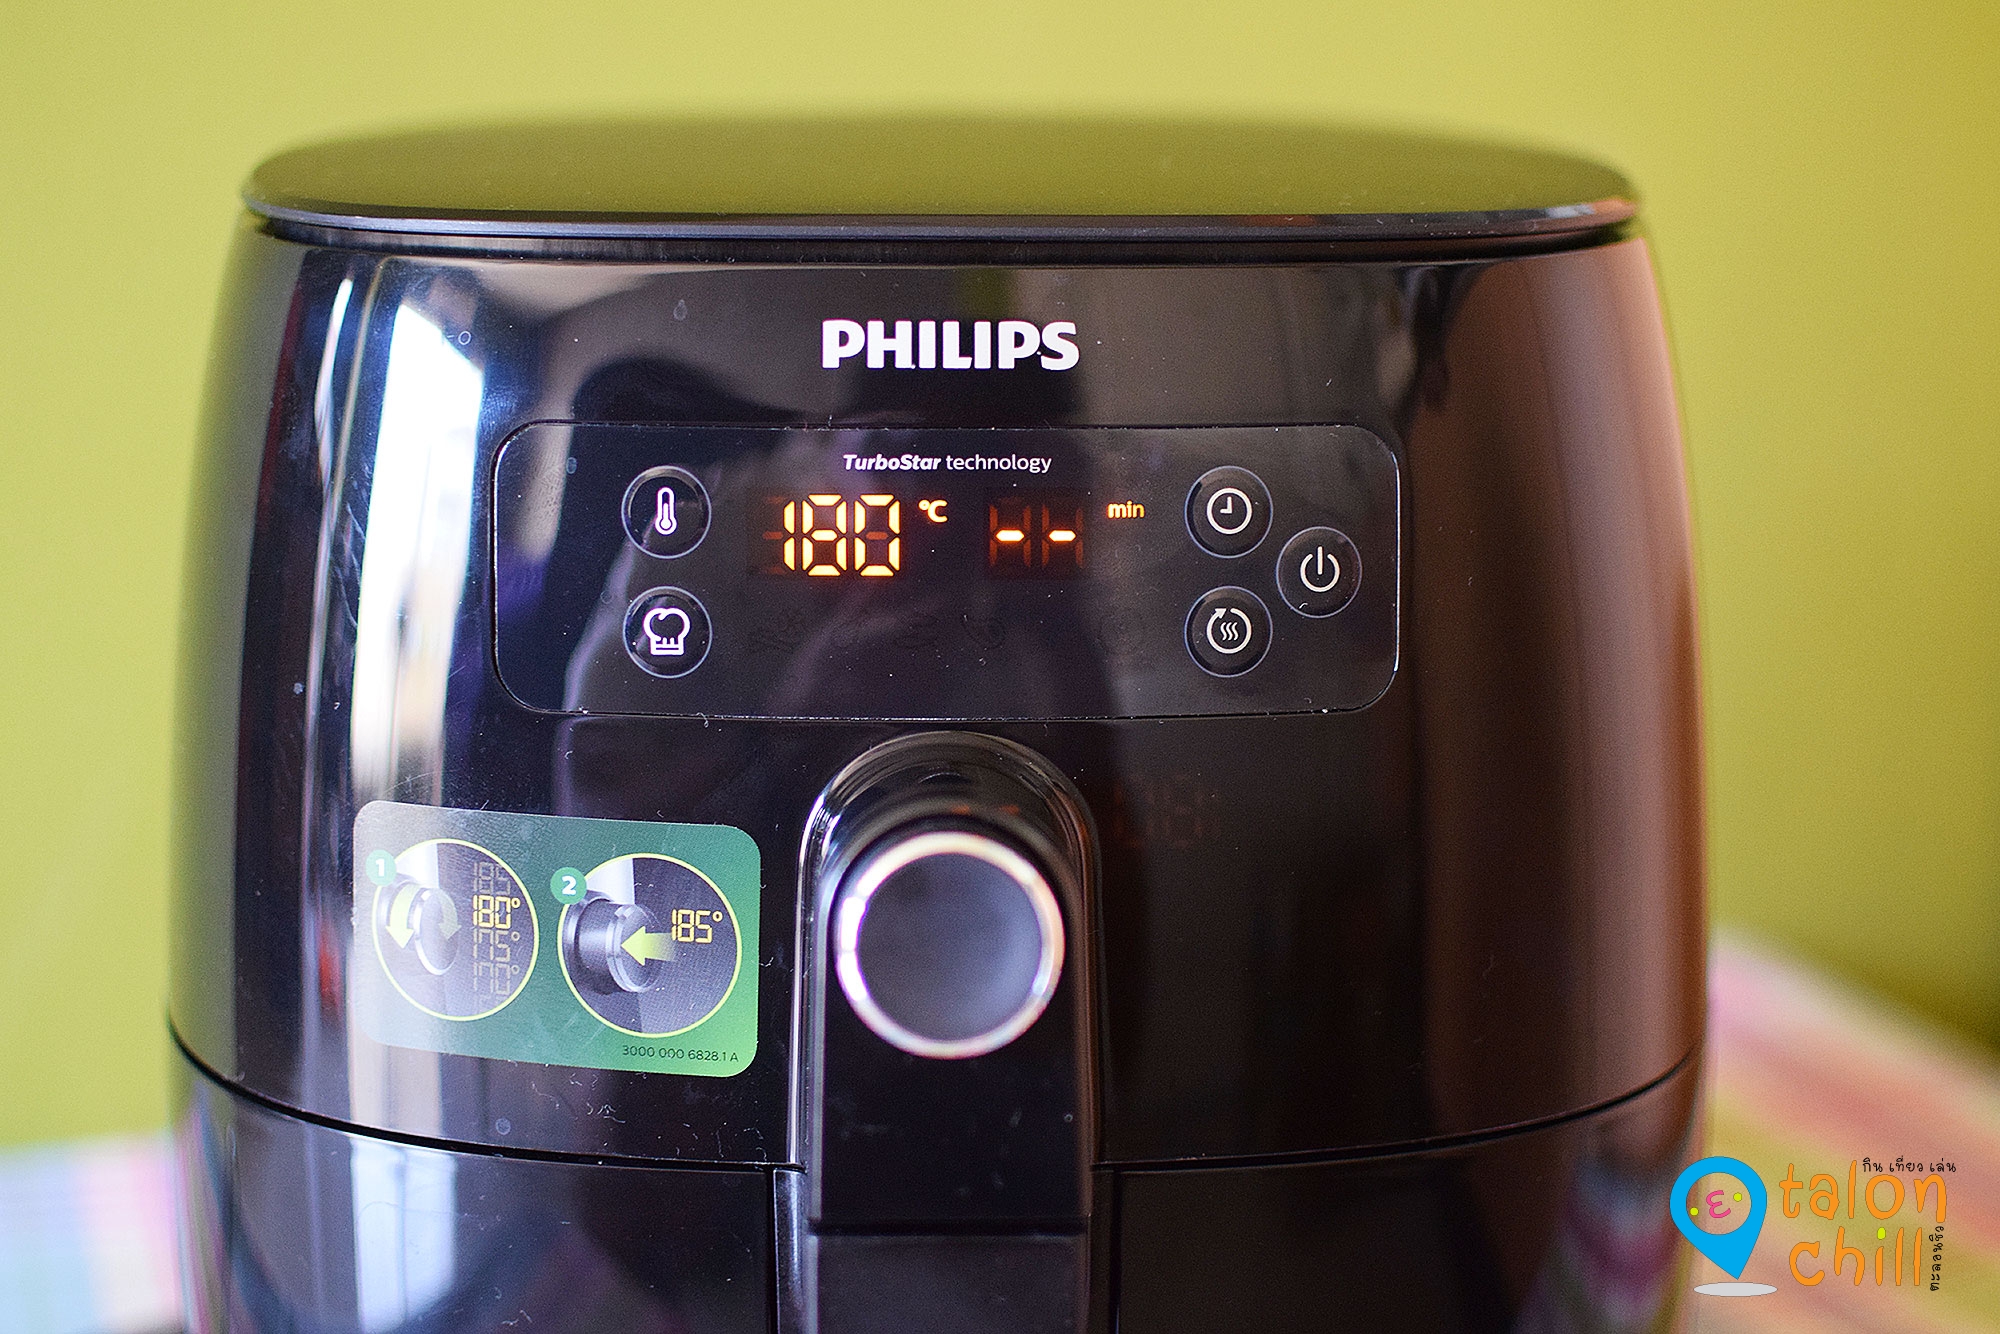 [แกะกล่องรีวิว] หม้อทอดฟิลิปส์ Philips Airfryer ทอดอร่อย สุขภาพดี ไม่เติมน้ำมัน #sponsoredreview